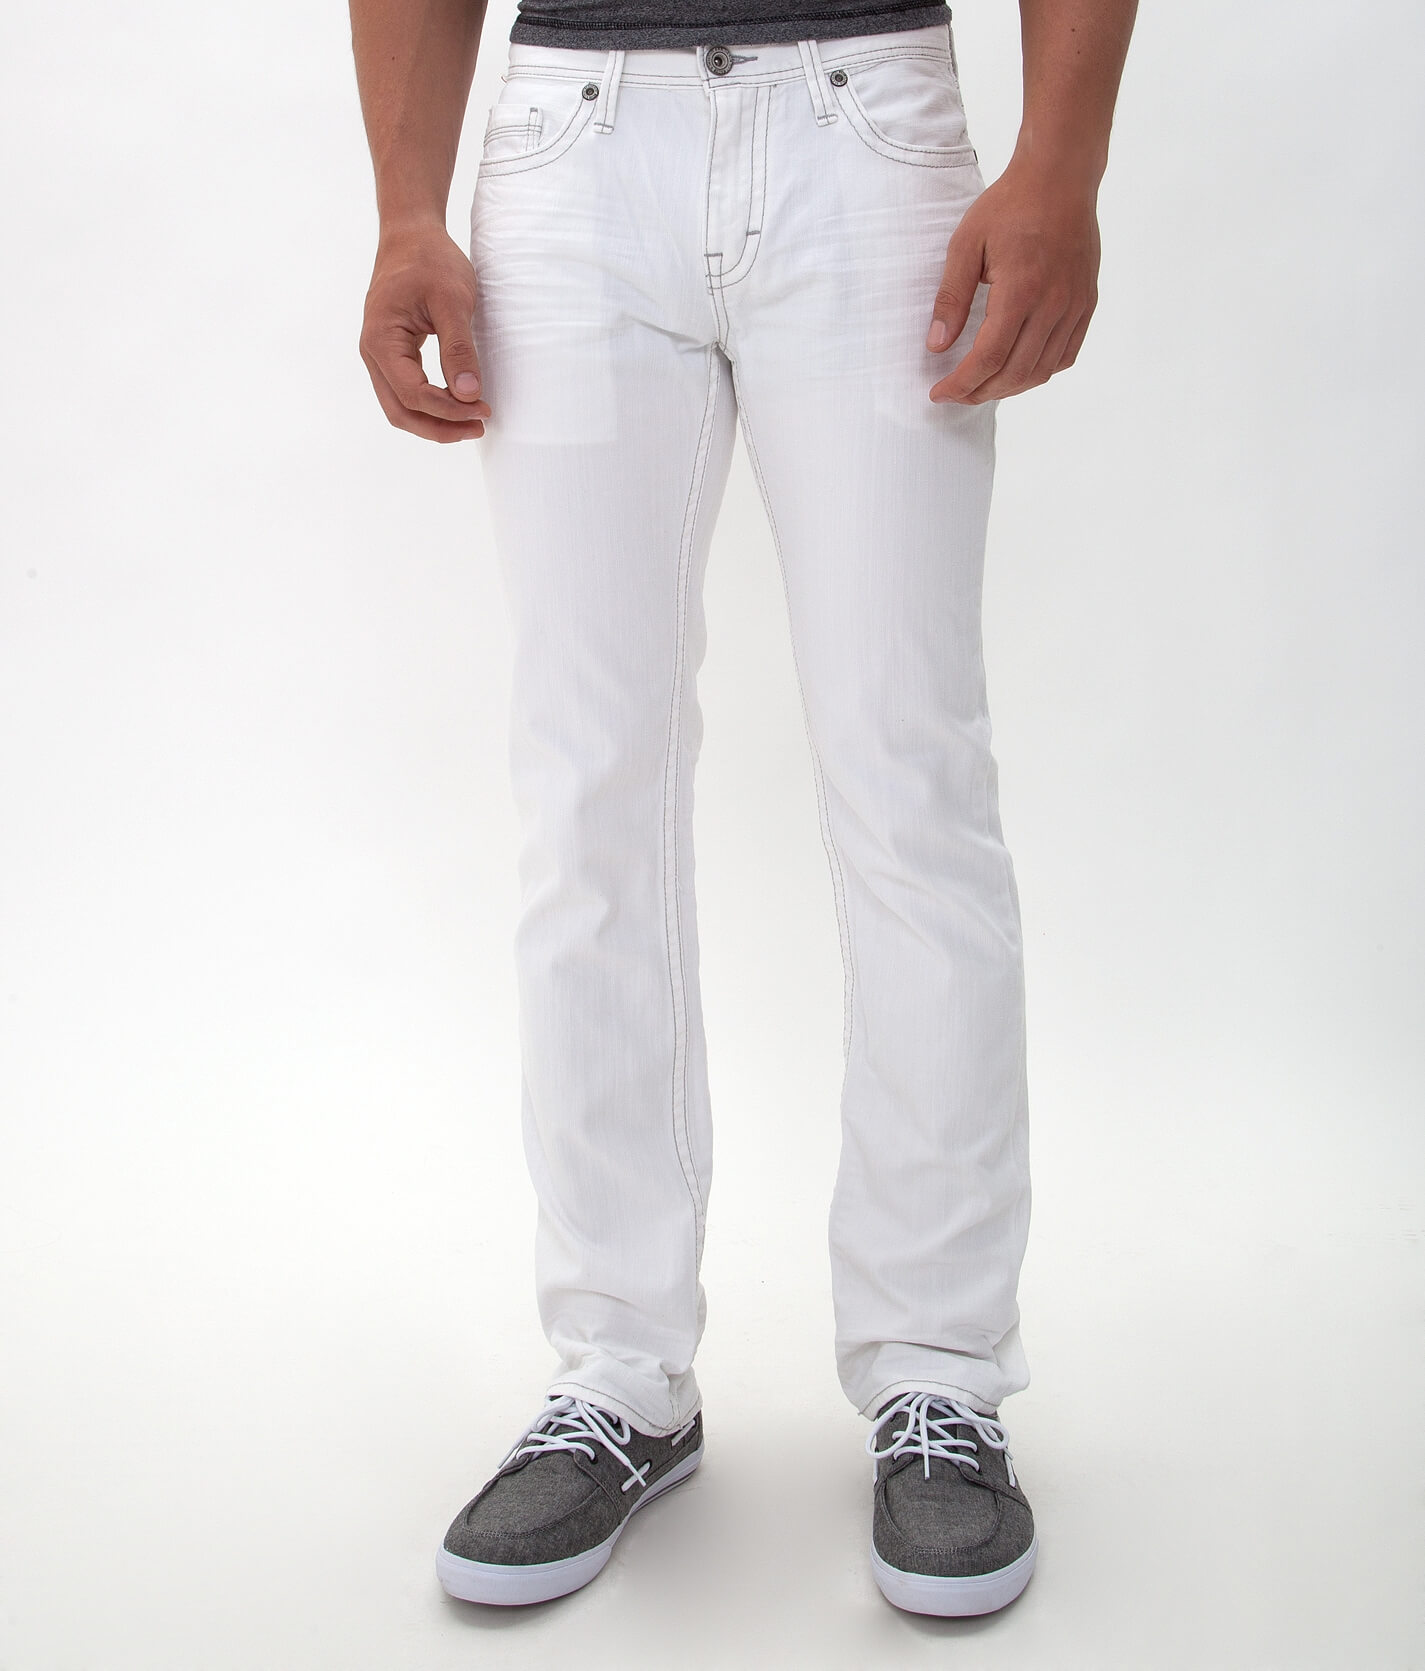 Jeans for Men - BKE, White | Buckle